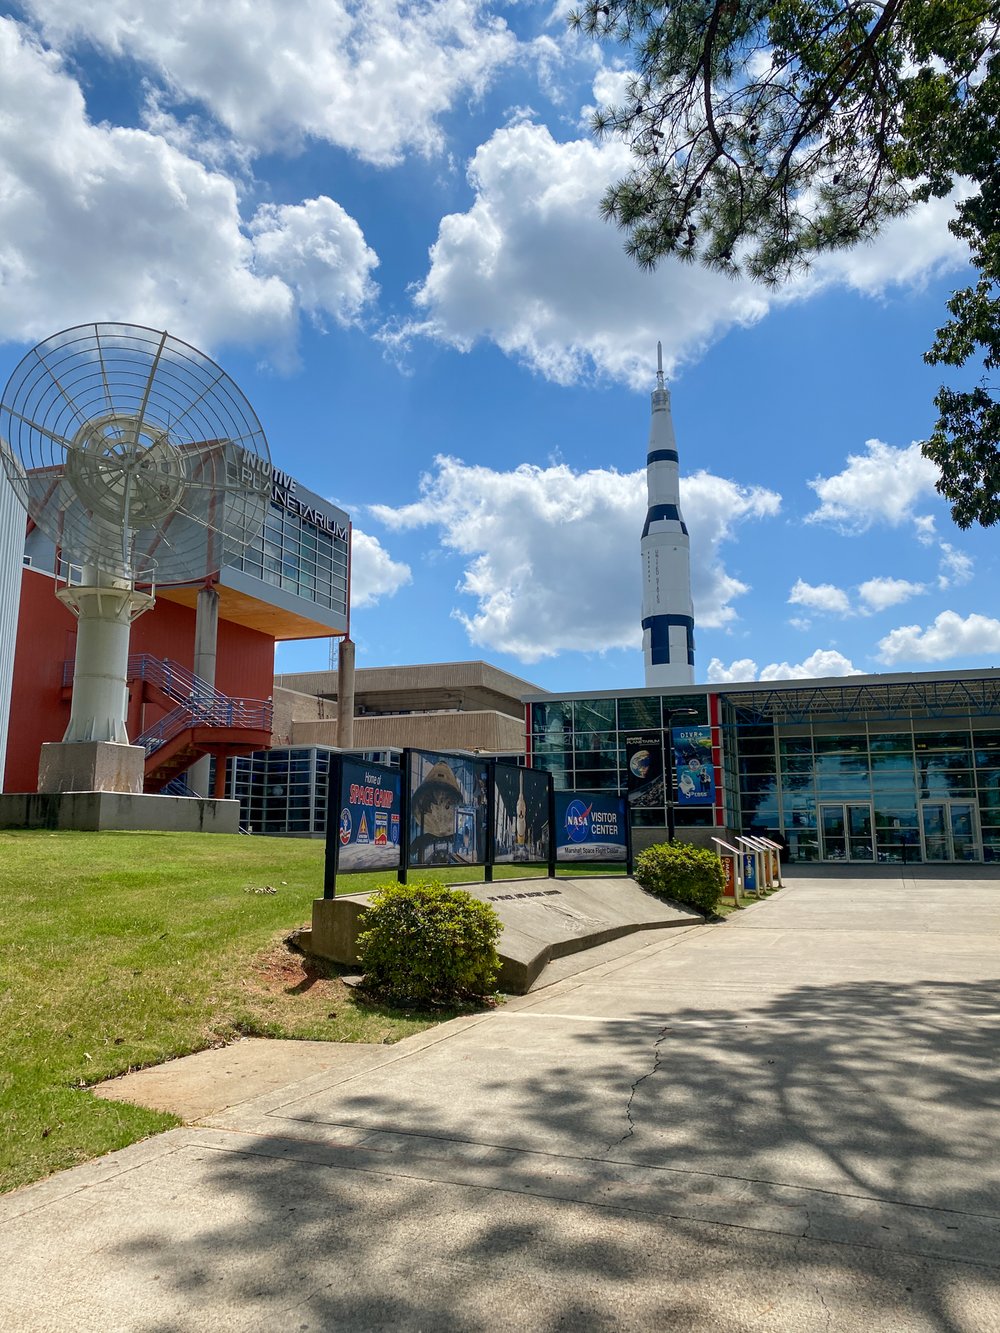 Rocket at U.S. Space &amp; Rocket Center in Huntsville, AL